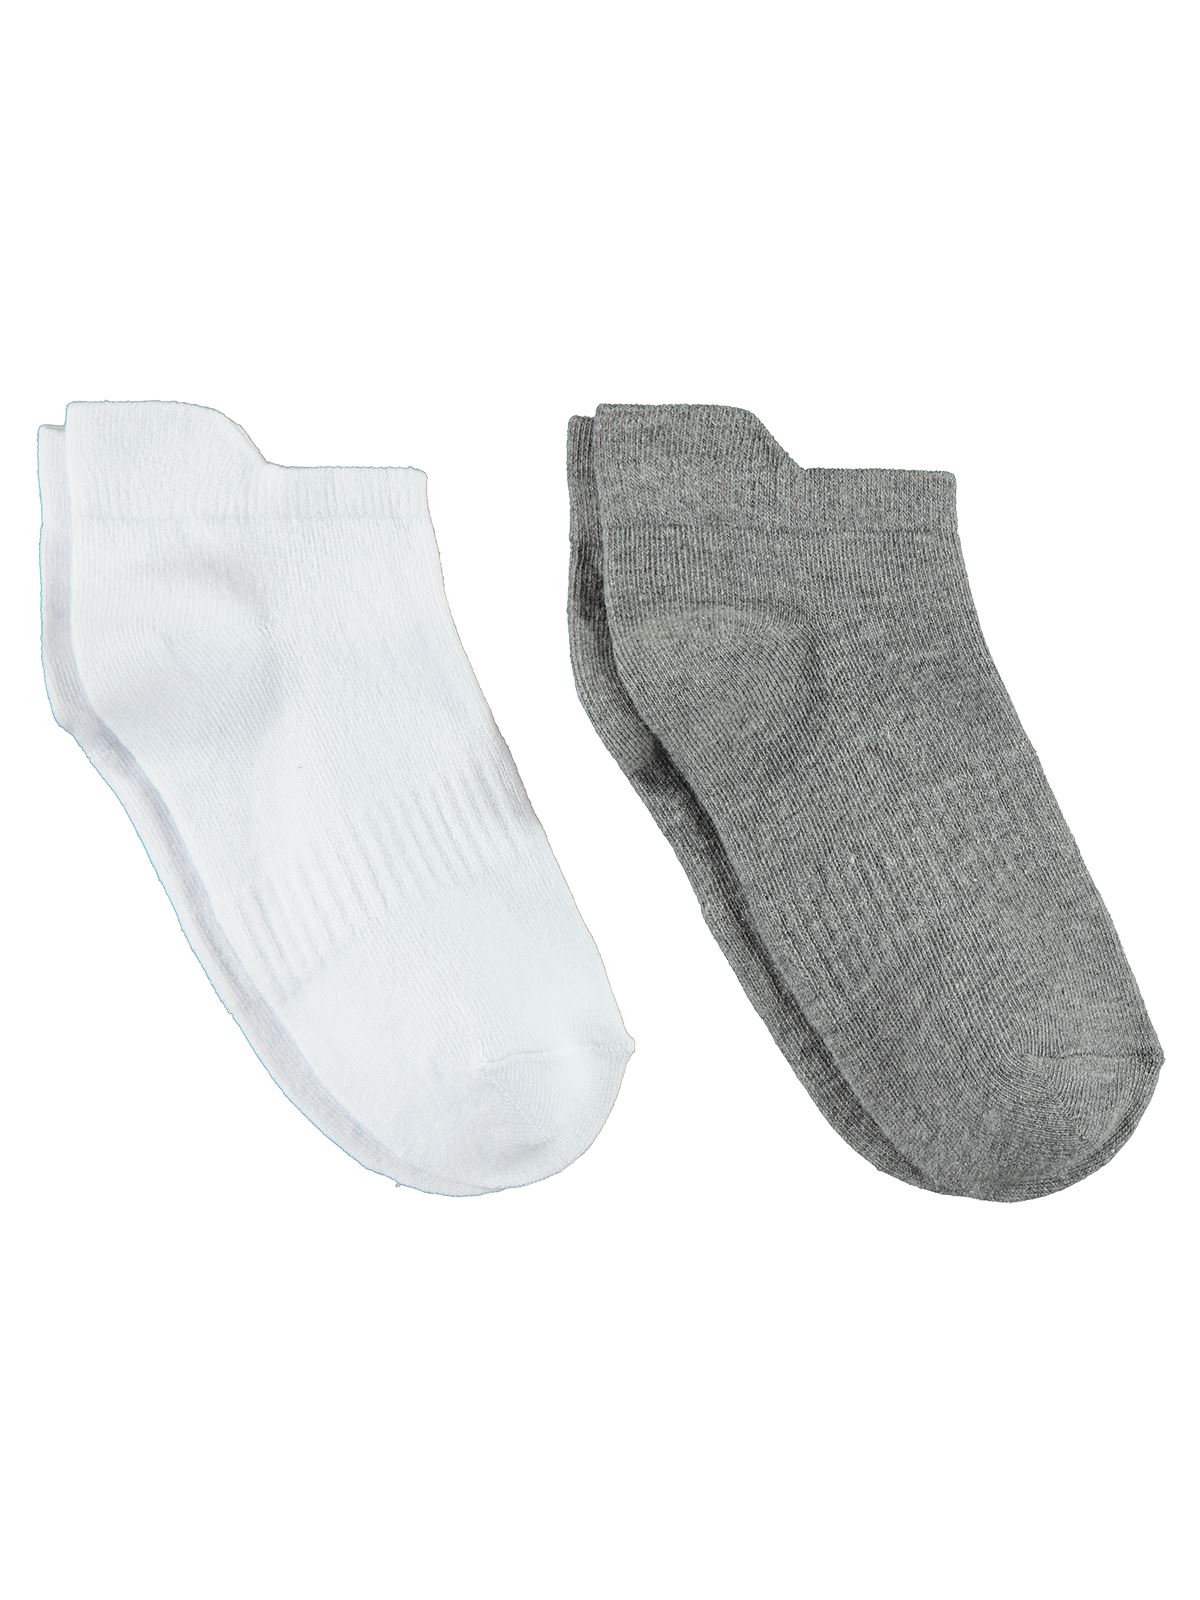 Gzn Kadın 2'li Dikişsiz Patik Çorap 36-40 Numara Gri-Beyaz